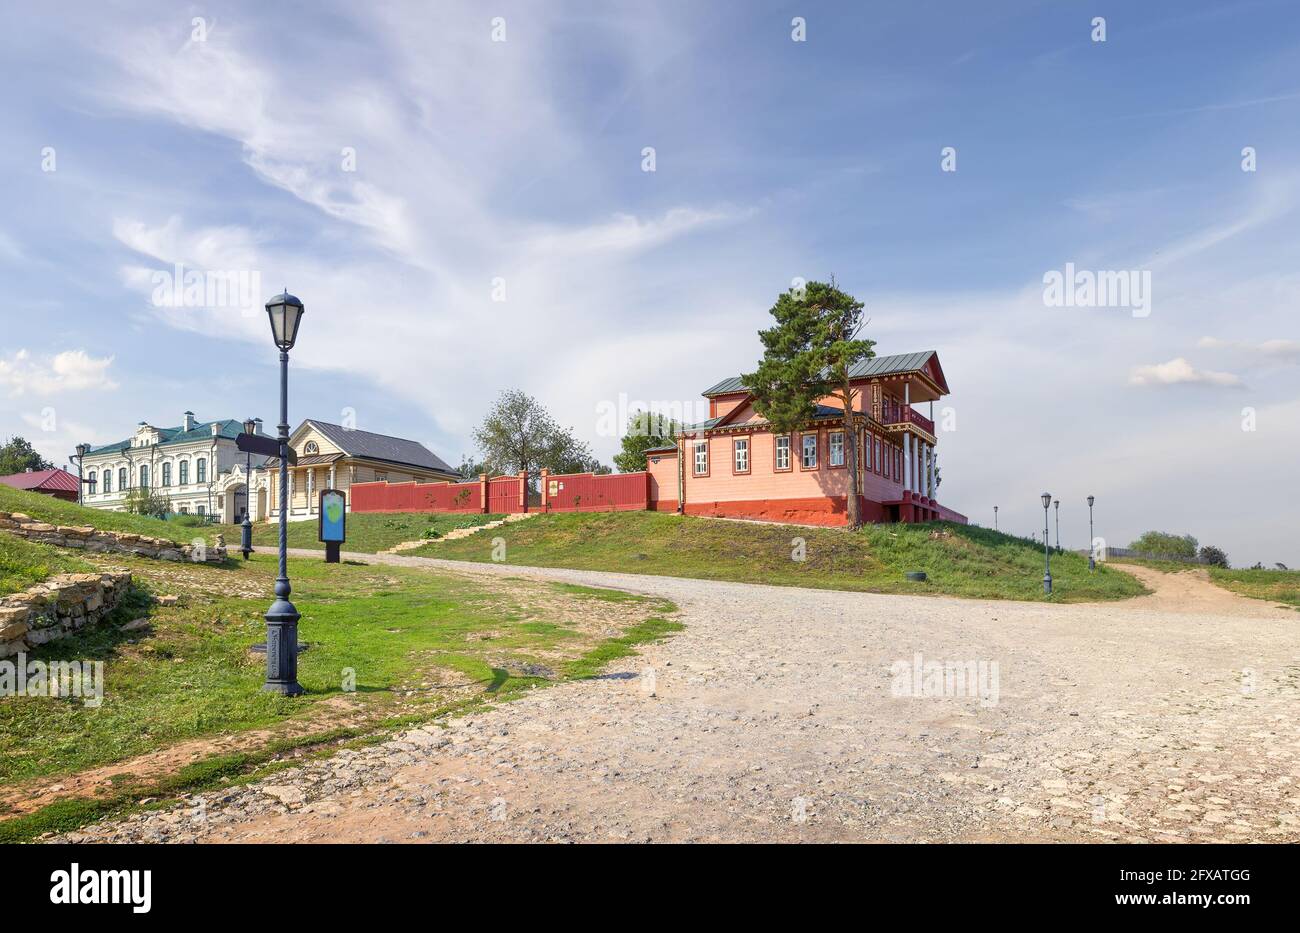 Svijaschsk - ein kleines Inseldorf am Ufer von Sviyaga, wurde 1551 gegründet. Kasan, Tatarstan, Russland. Stockfoto